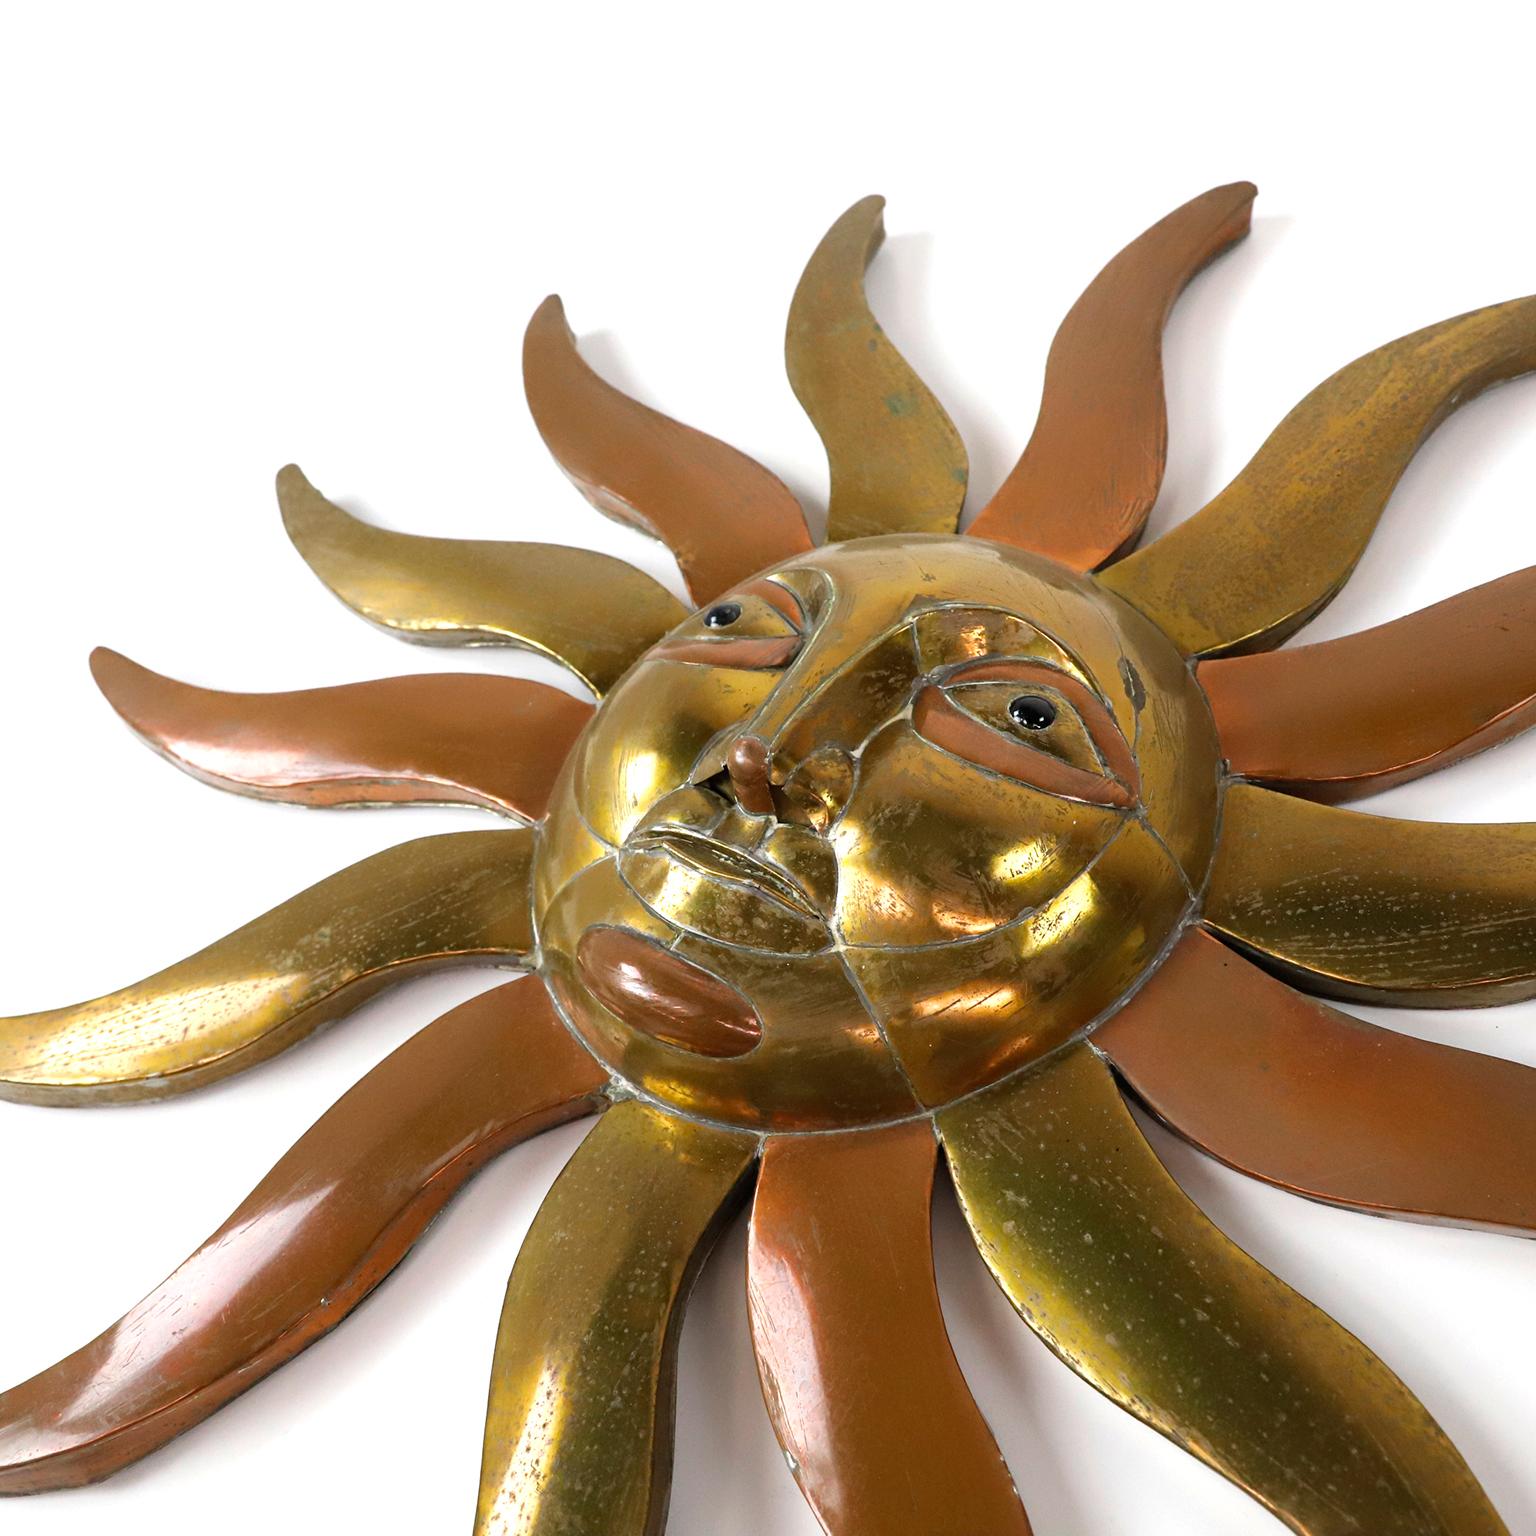 Nous proposons cette sculpture de soleil brutaliste surréaliste en laiton et bronze de Sergio Bustamante, datant d'environ 1970.